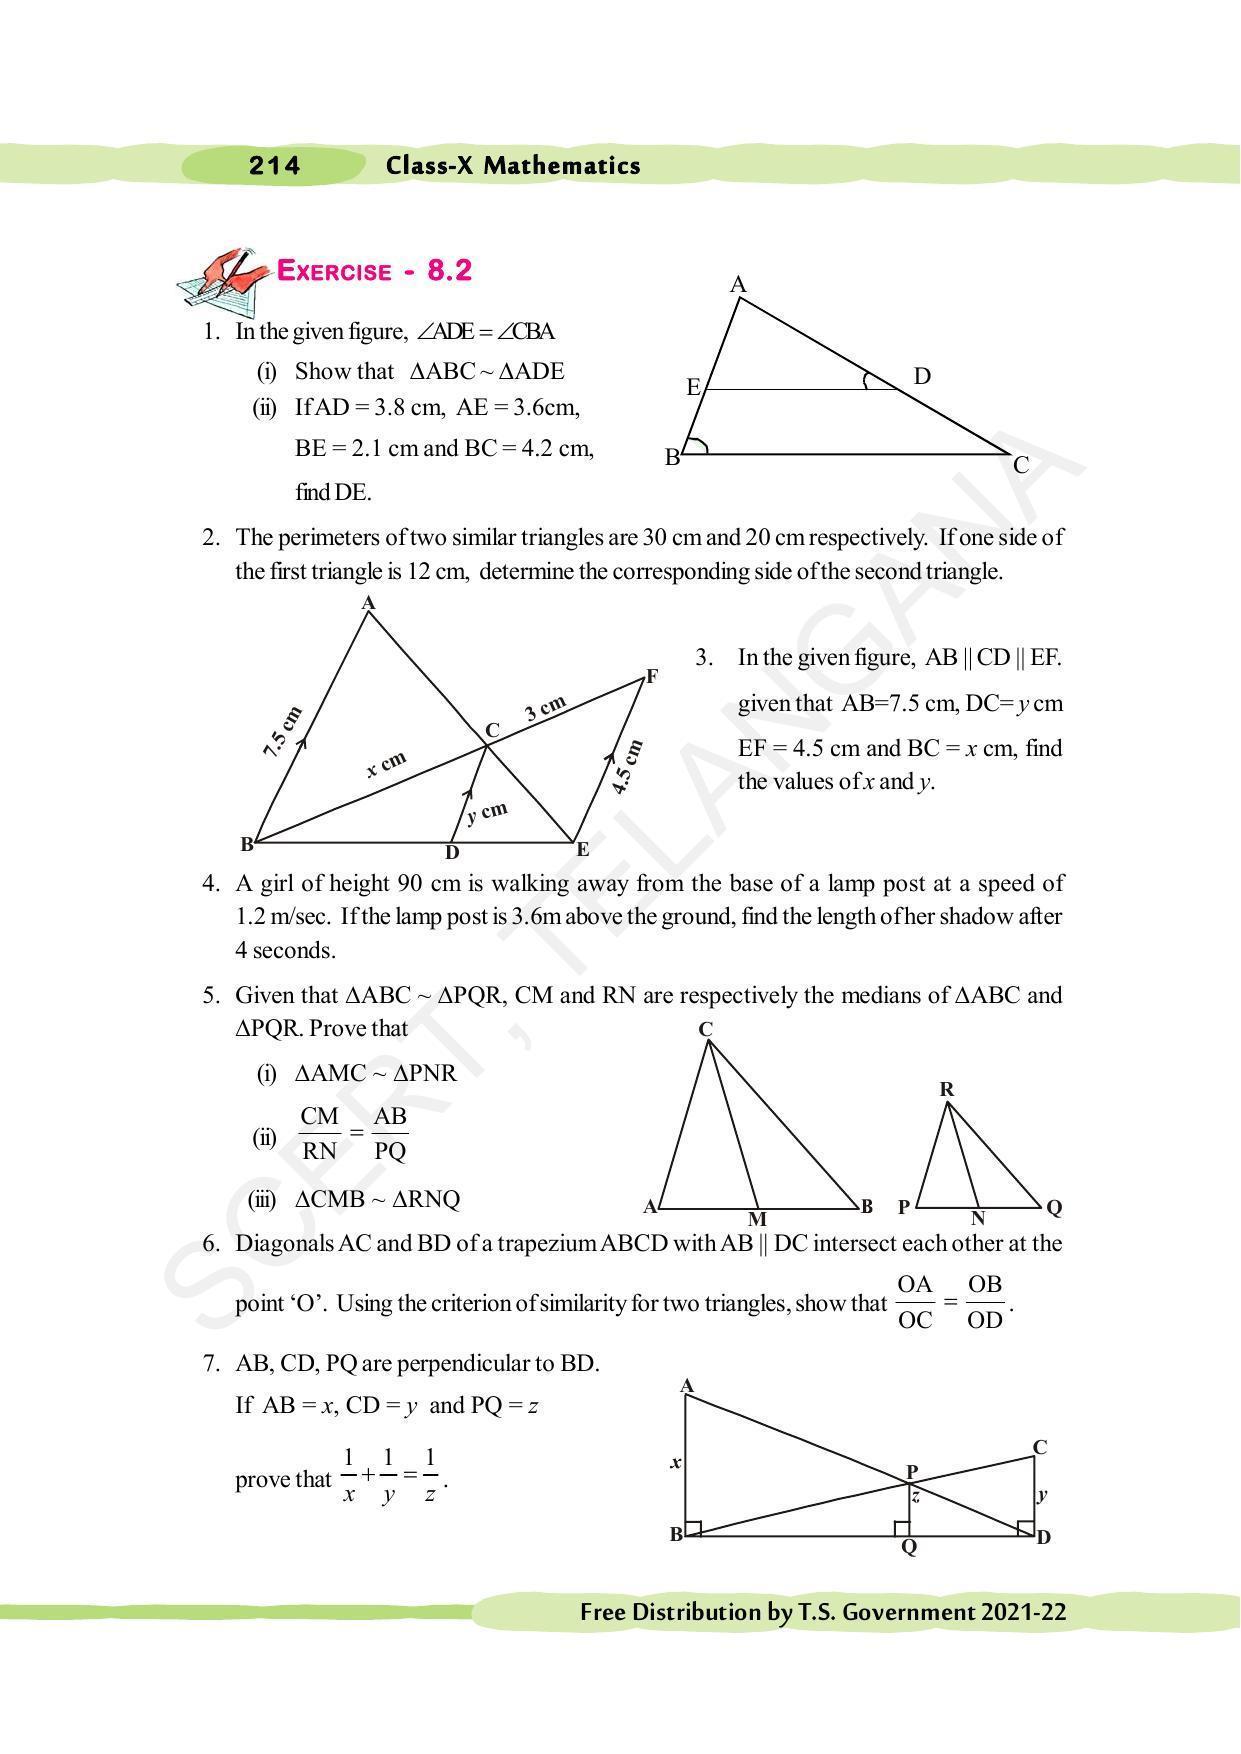 TS SCERT Class 10 Maths (English Medium) Text Book - Page 224